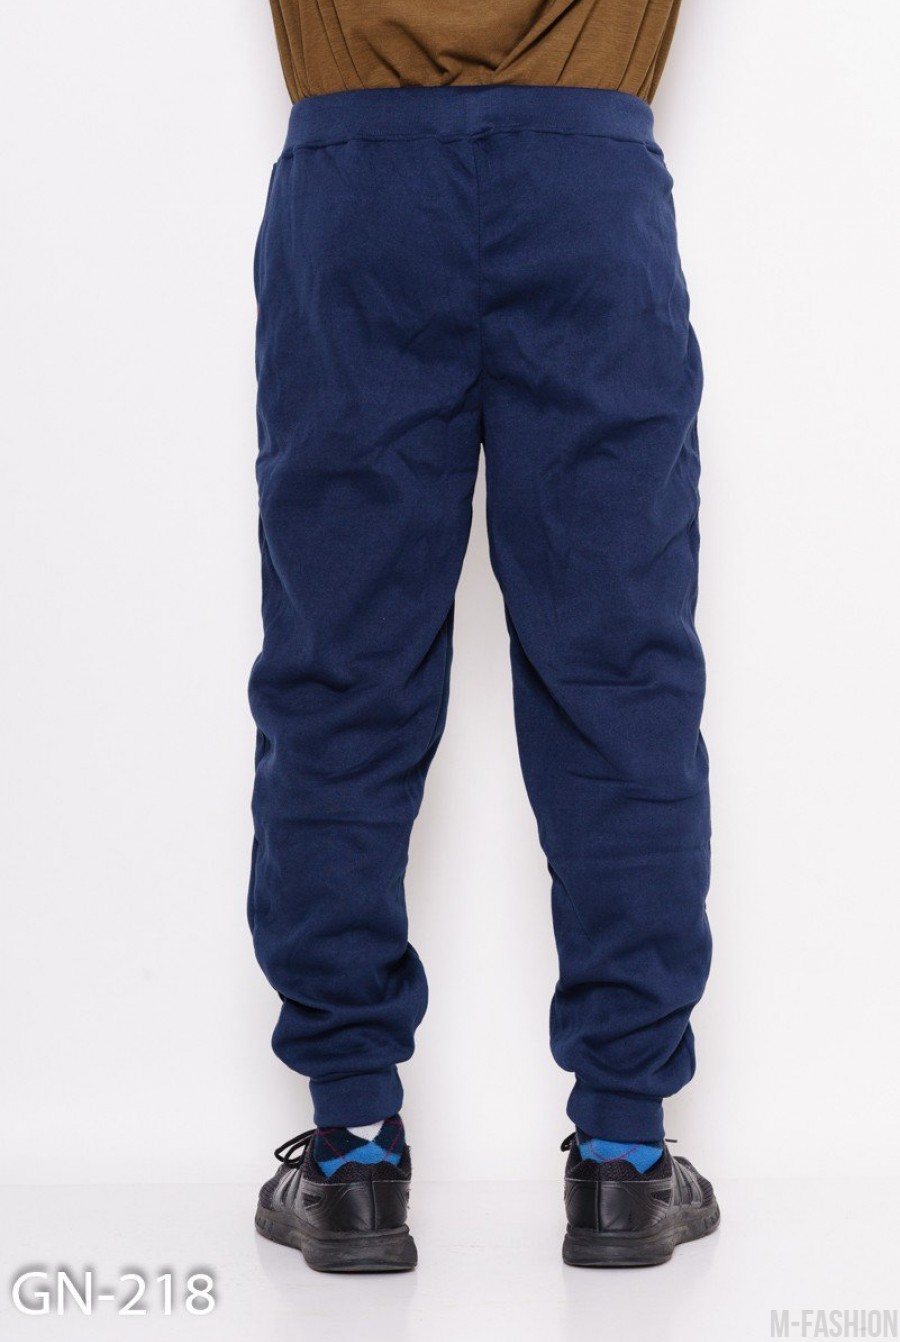 Синие трикотажные спортивные штаны на флисе с манжетами и контрастными вставками- Фото 4